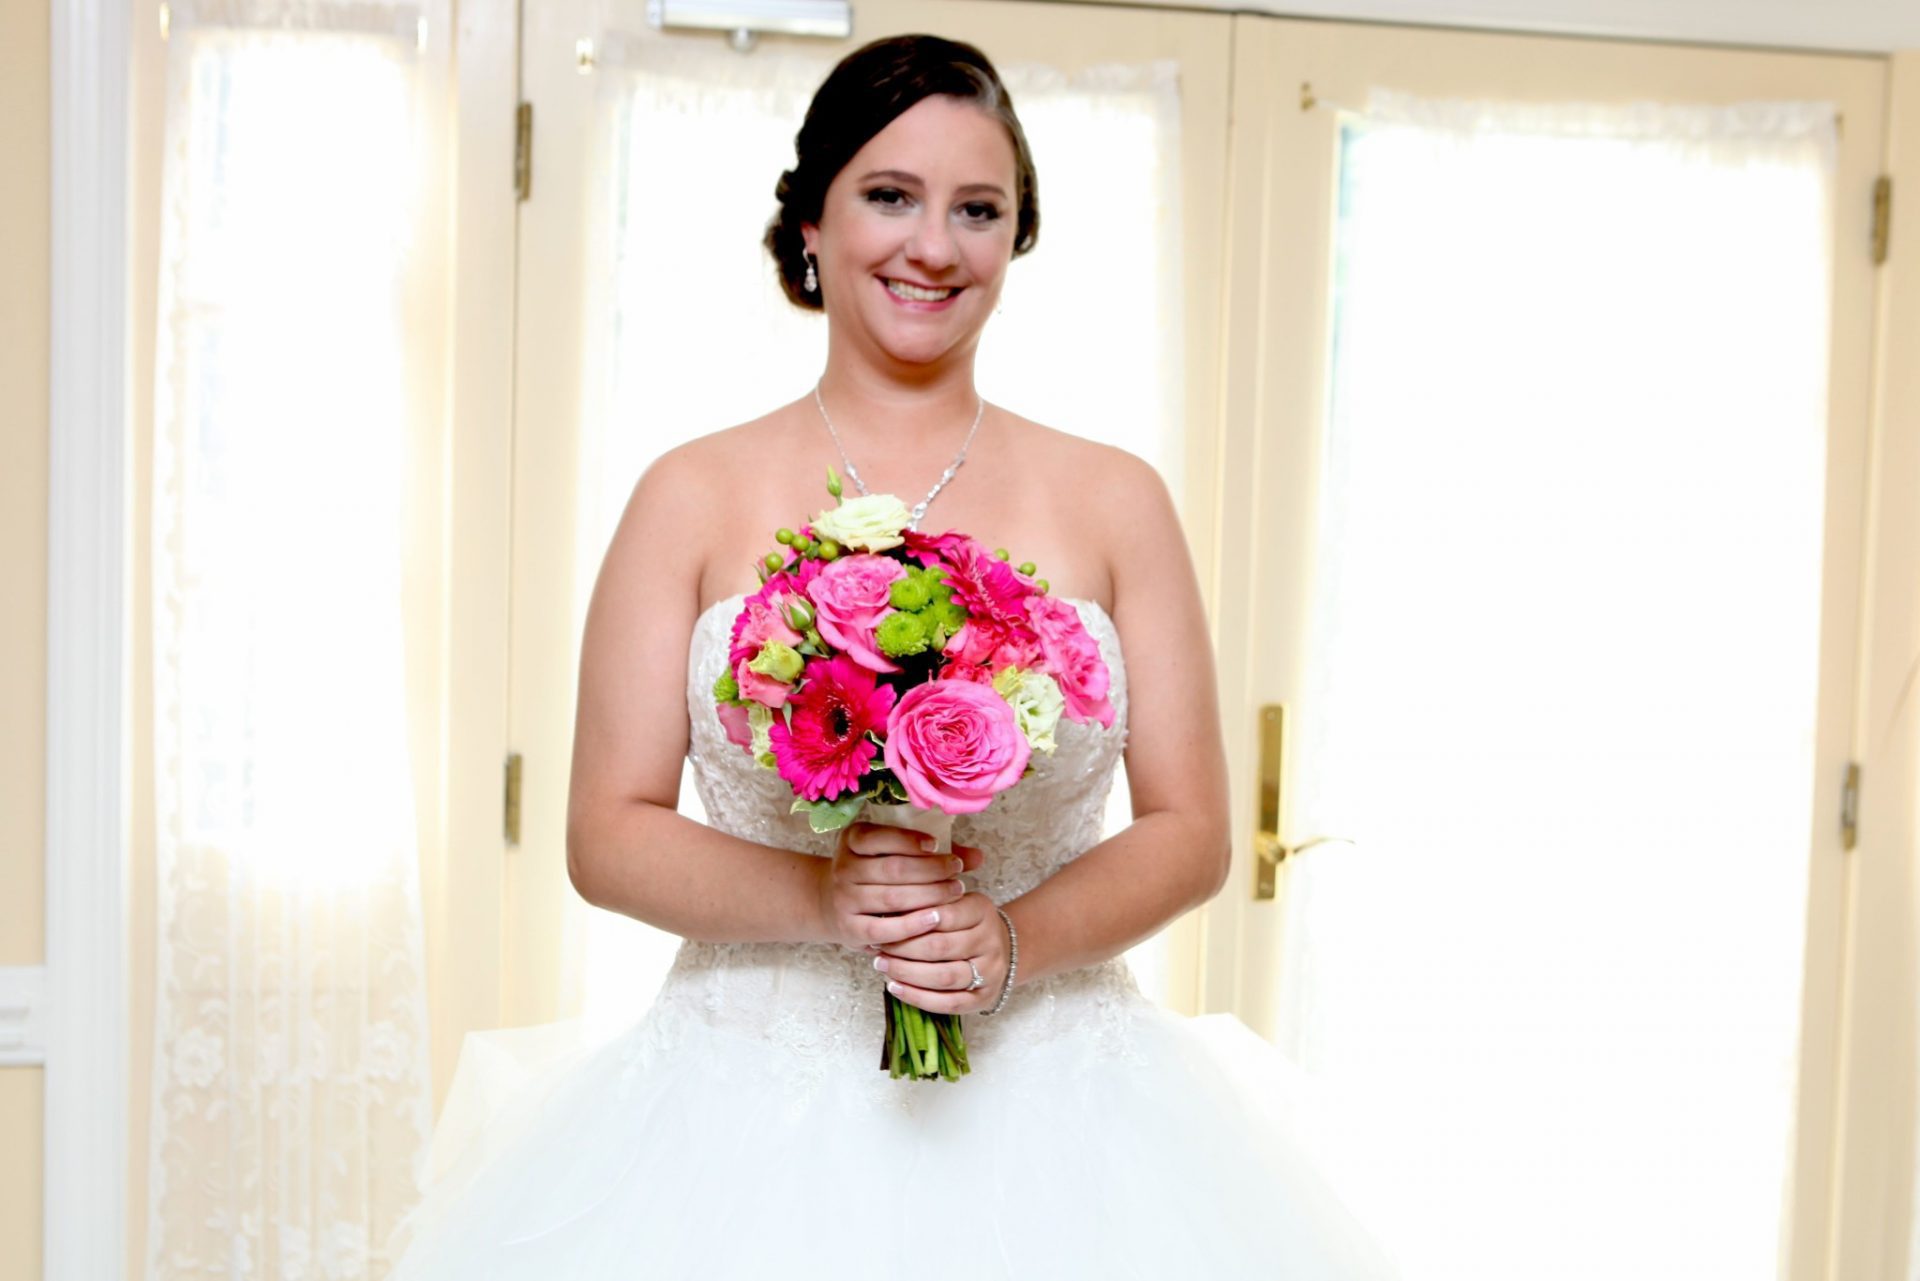 Bride poses by window in bride's room